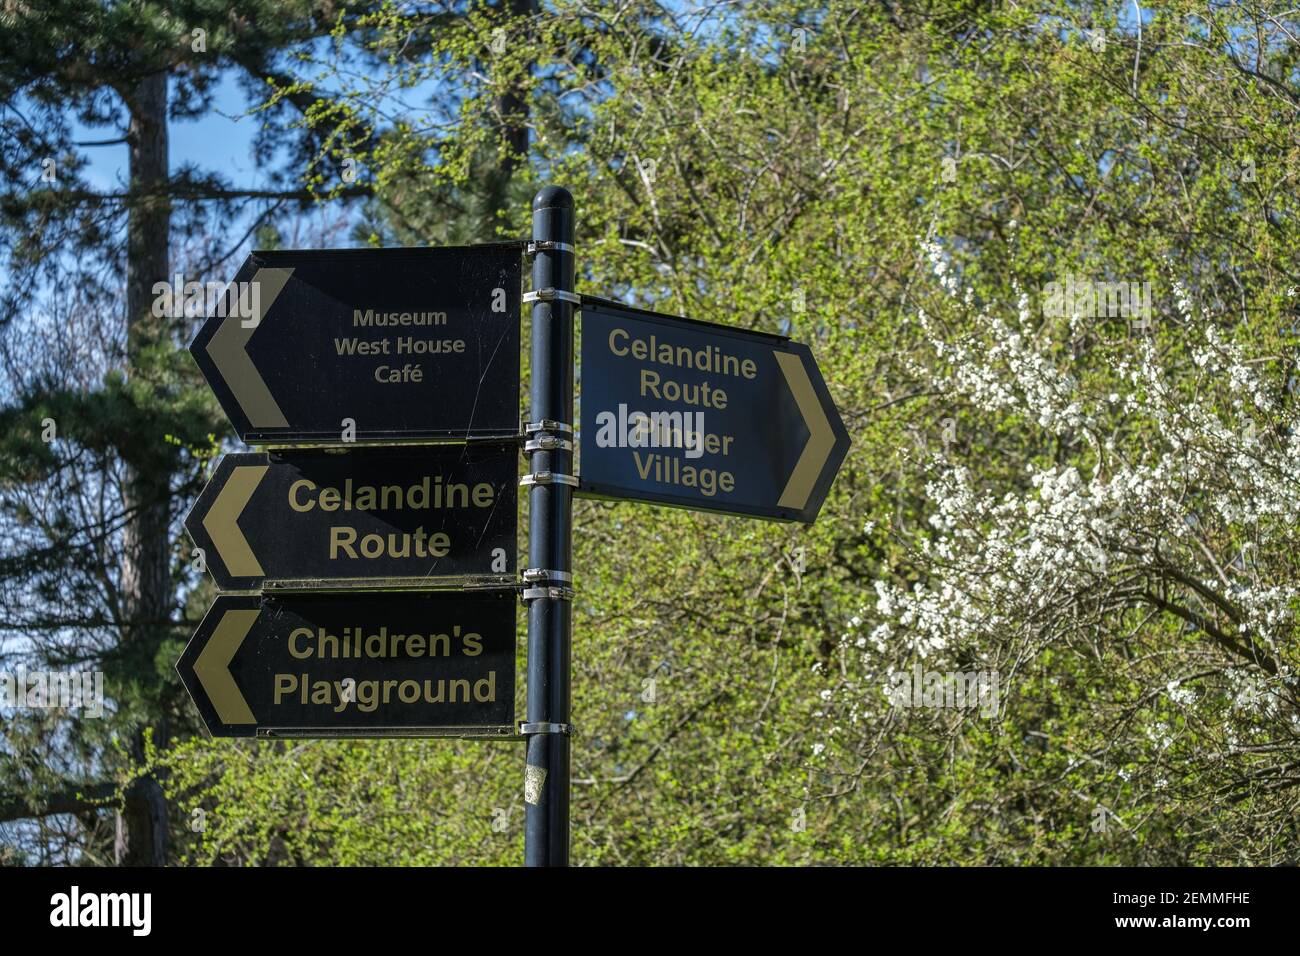 Poste con 4 señales en el Parque Memorial Pinner, señalando el parque infantil, la ruta Celandine, el museo, el pueblo Pinner y el café West House. Foto de stock